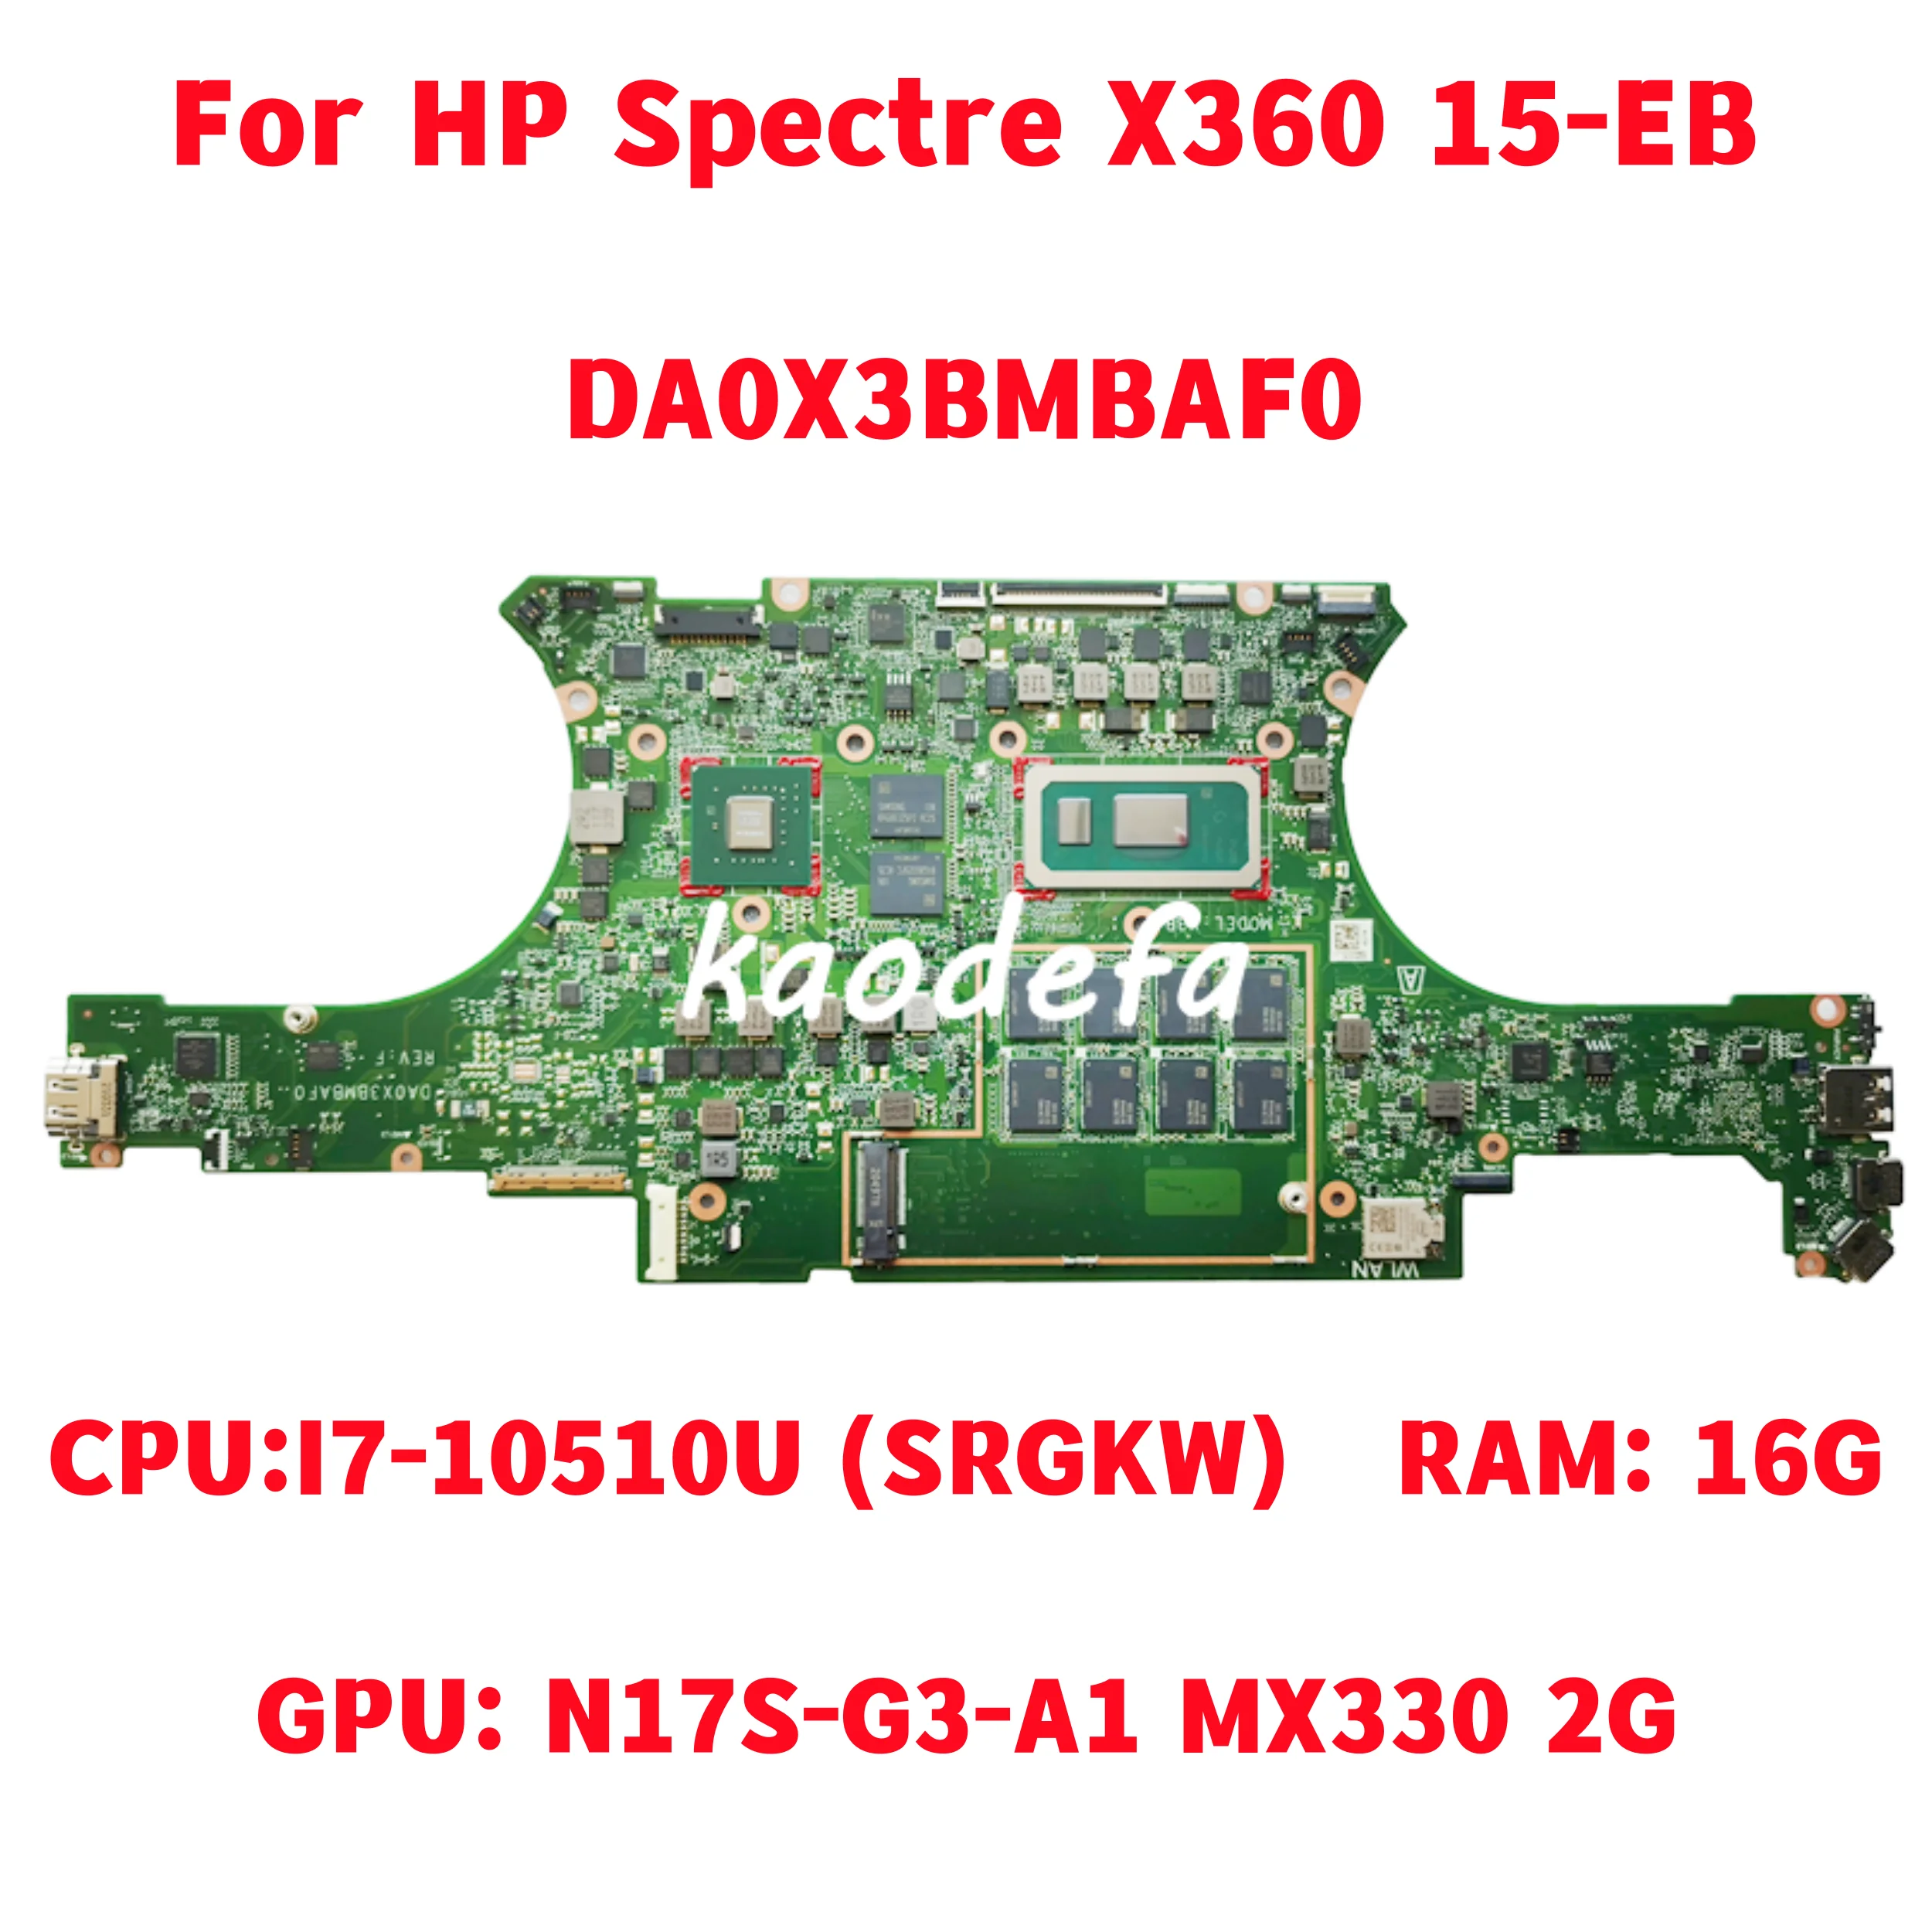 

Материнская плата DA0X3BMBAF0 для HP Spectre X360 15-EB, материнская плата для ноутбука, ЦП: Стандартный графический процессор MX330 2 Гб ОЗУ: 16 ГБ 100%, тест ОК